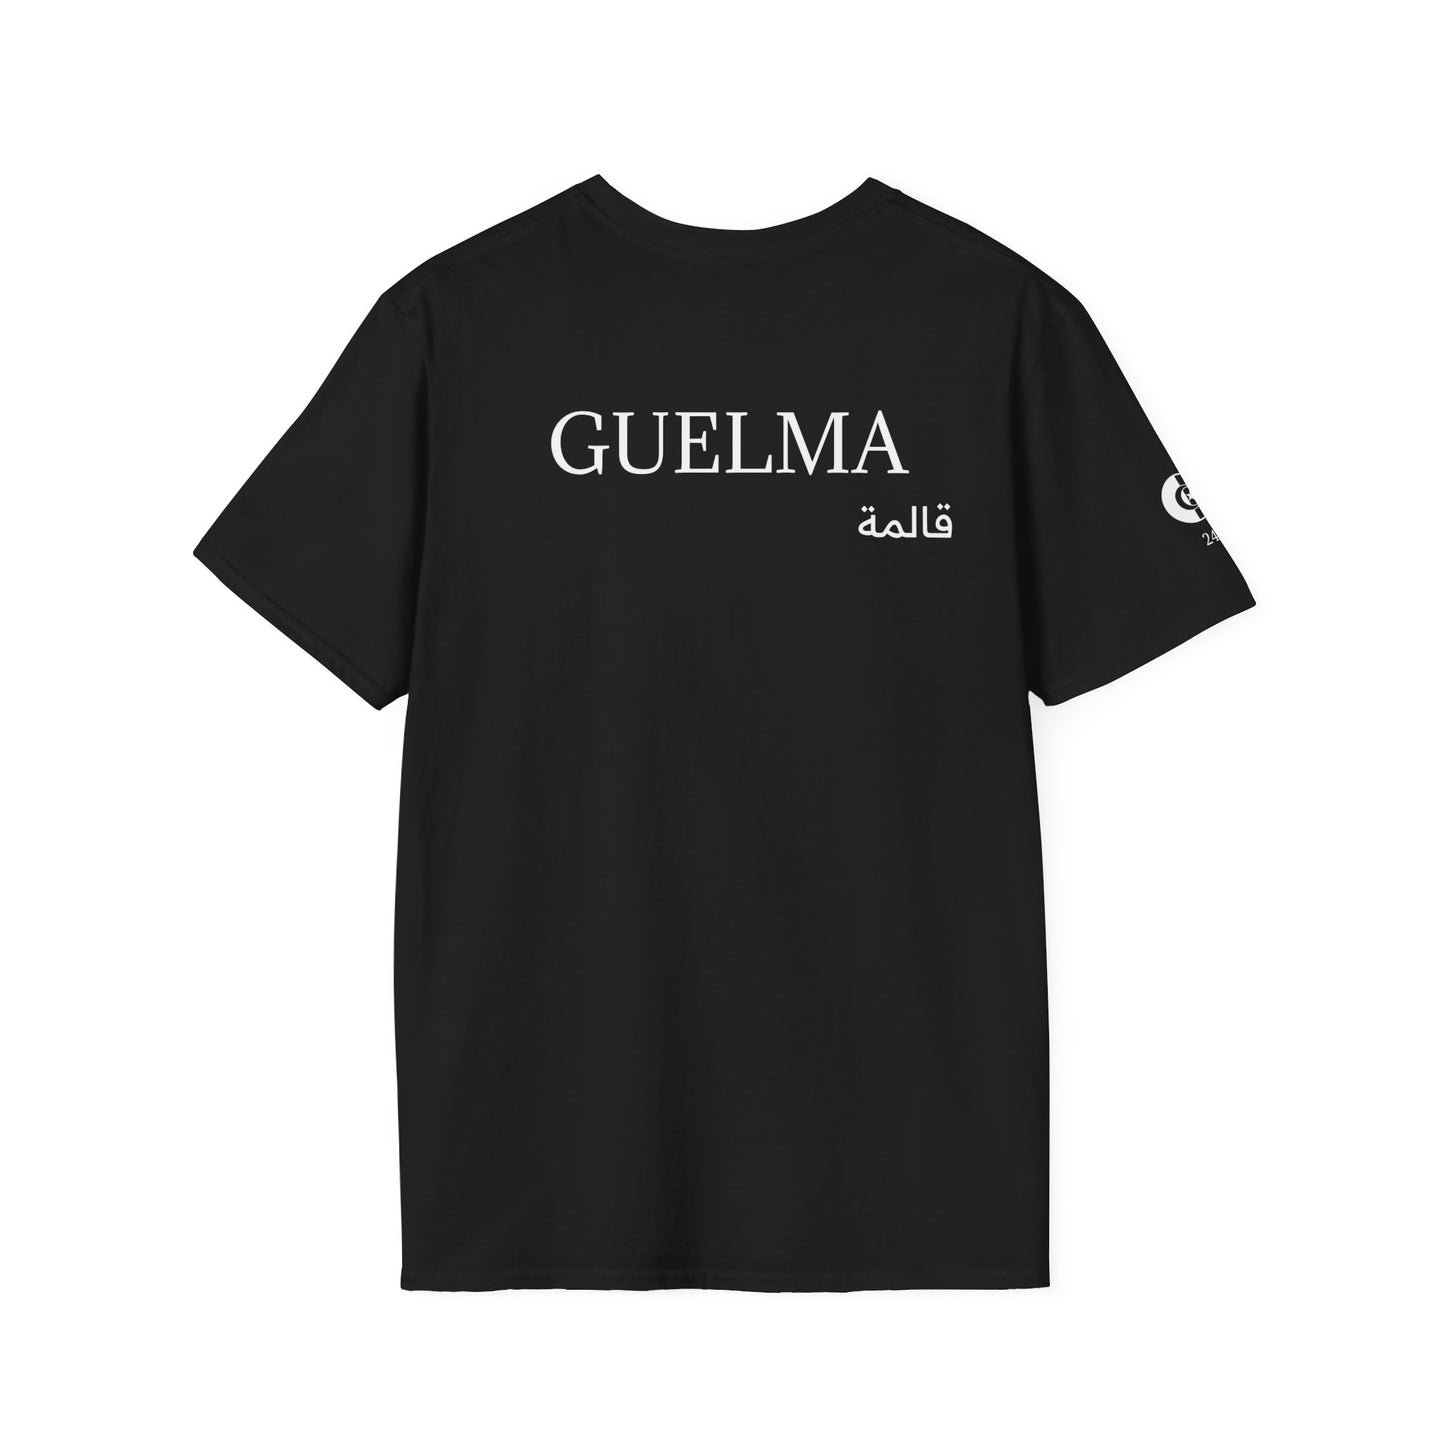 T-Shirt GUELMA 24